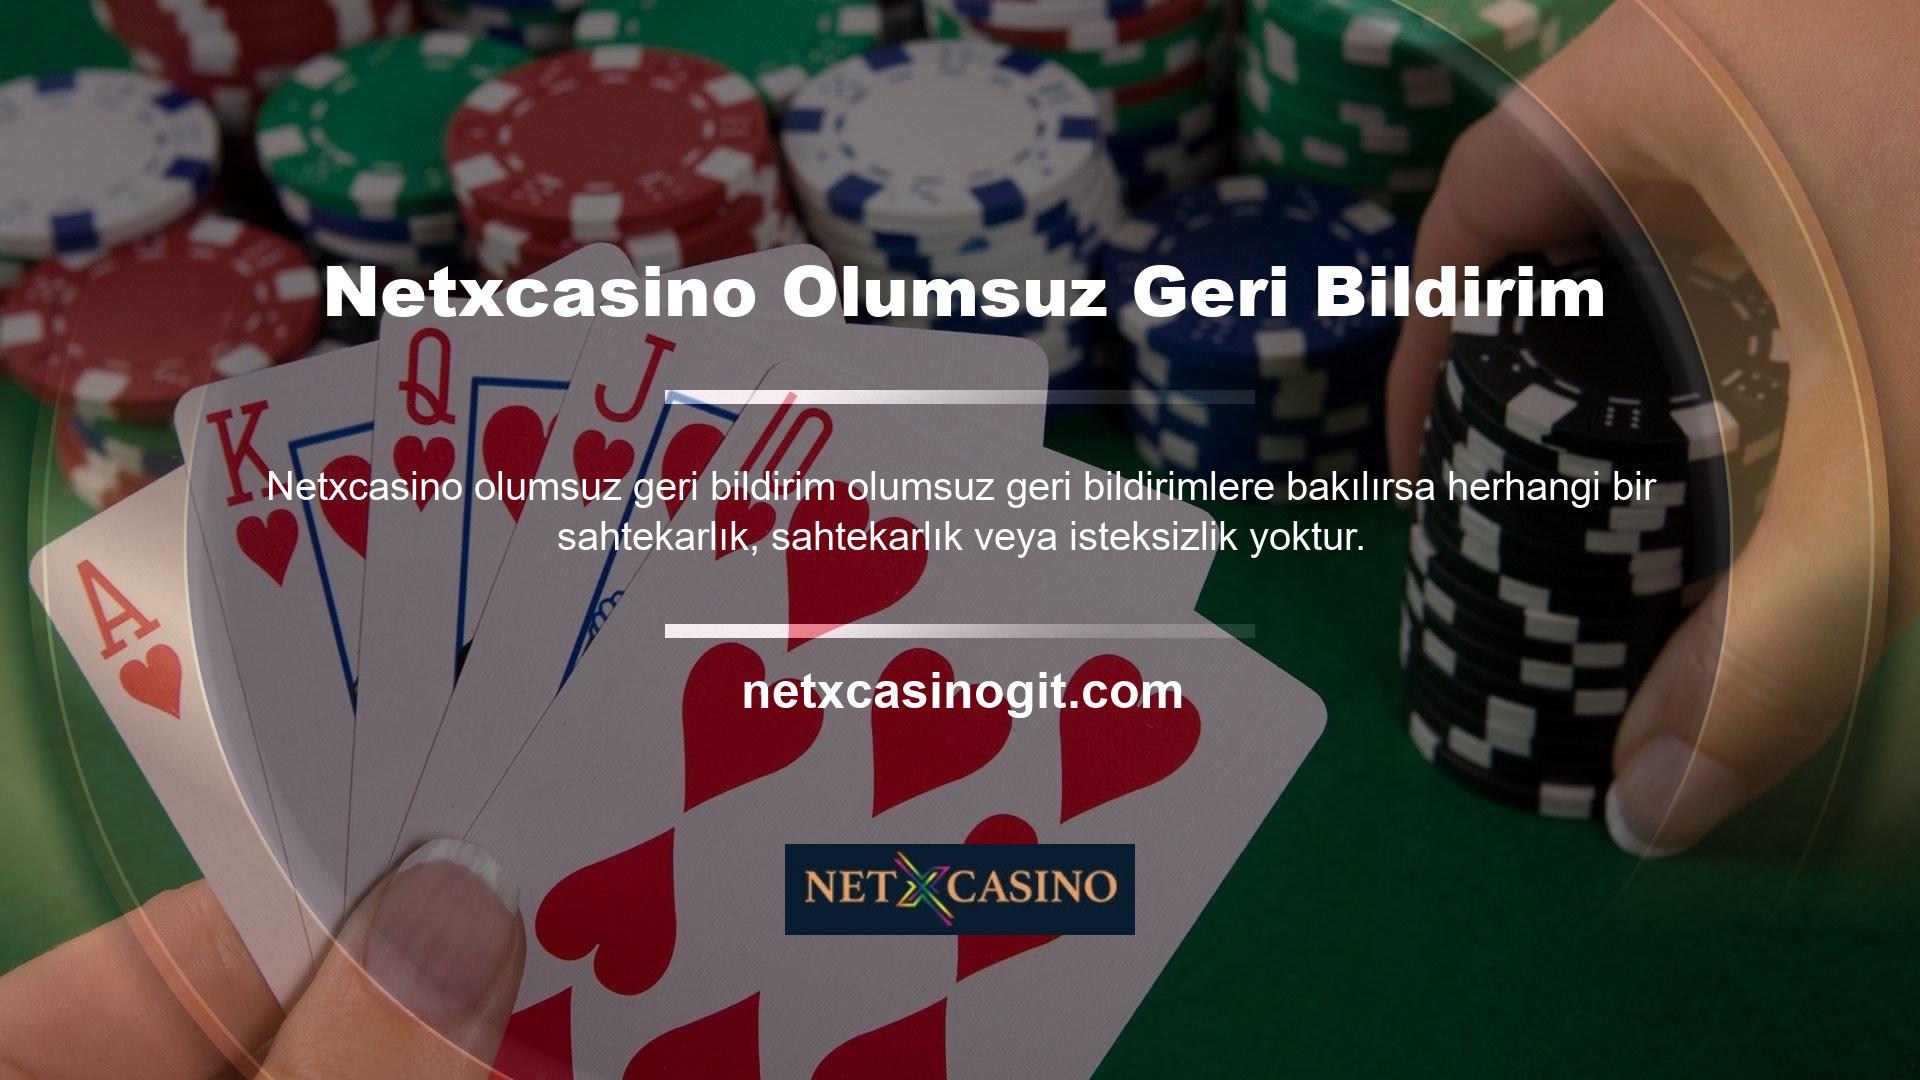 Netxcasino olumsuz geri bildirimli casino sitesinin kuralları vardır